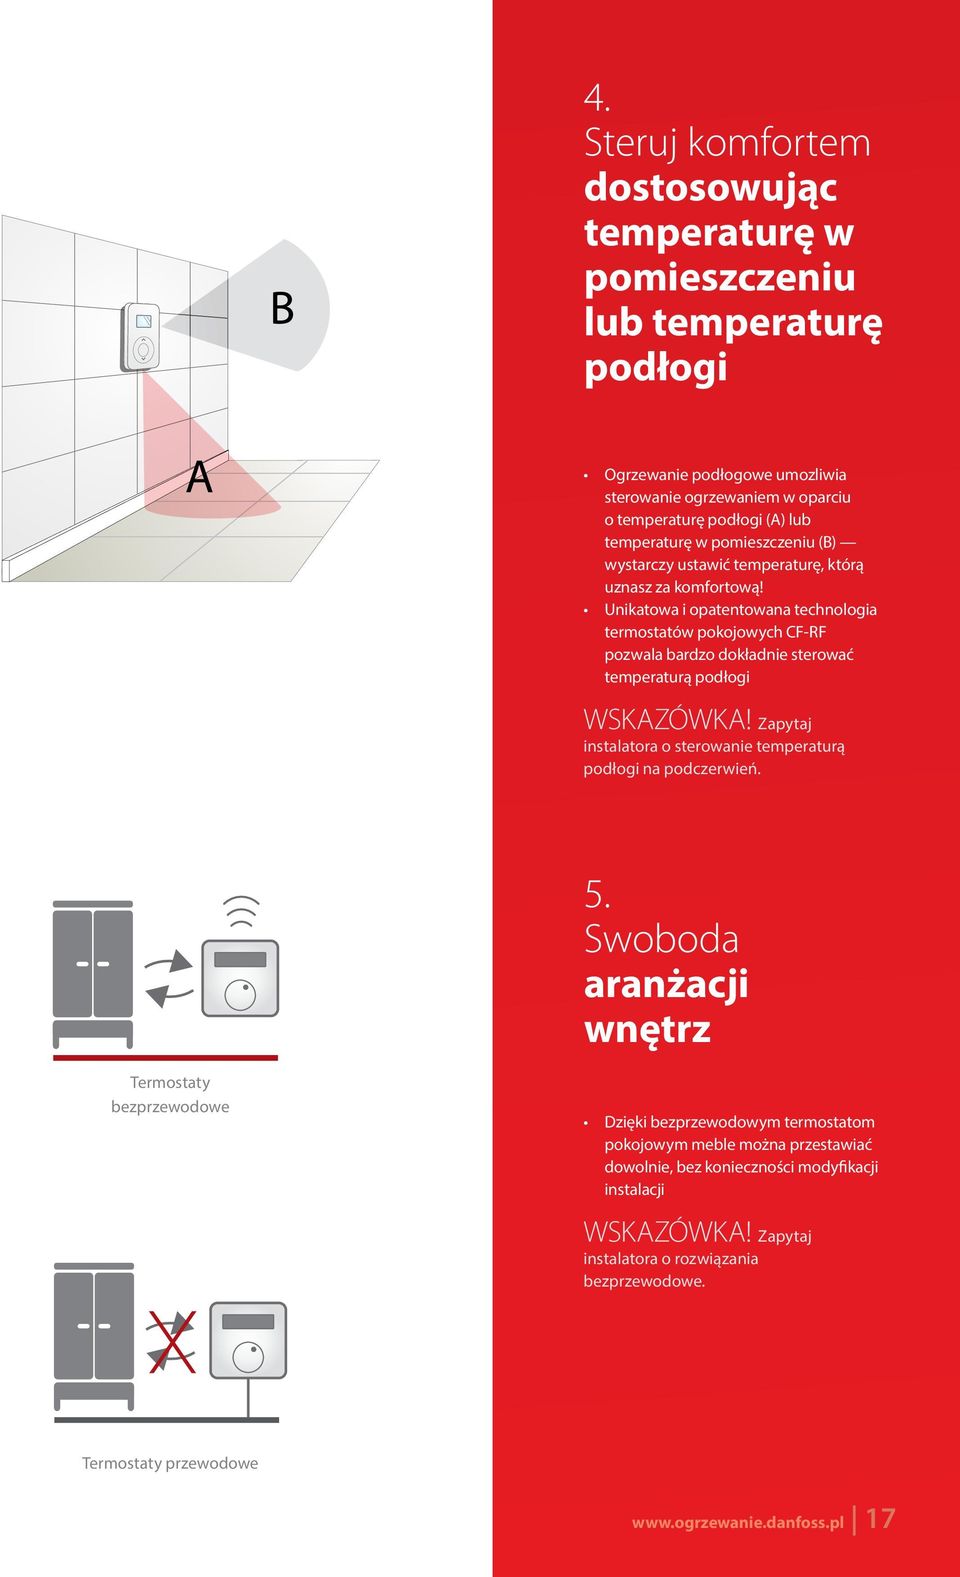 Unikatowa i opatentowana technologia termostatów pokojowych CF-RF pozwala bardzo dokładnie sterować temperaturą podłogi WSKAZÓWKA!